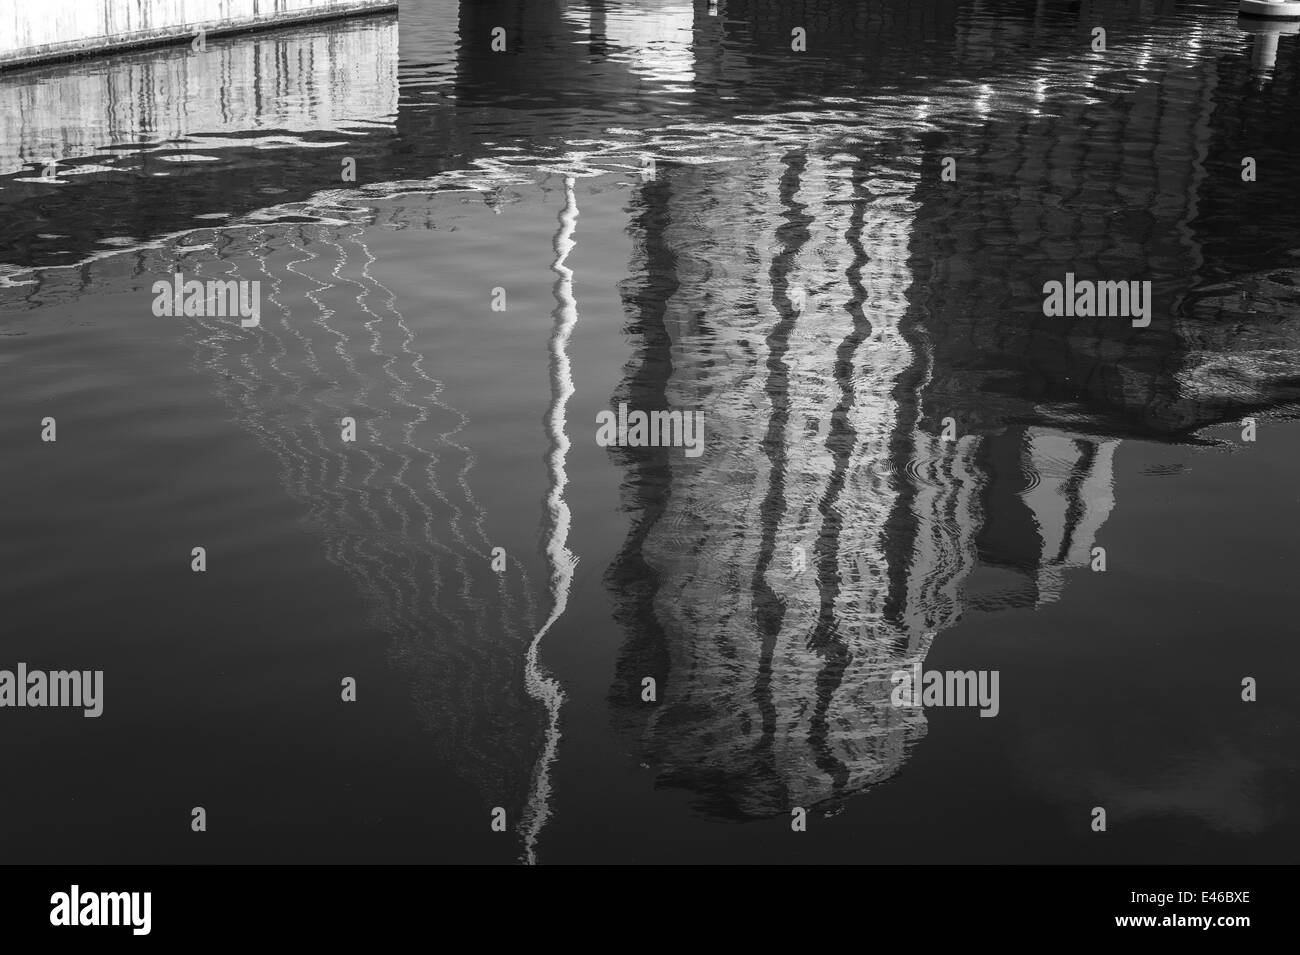 Schwarz / weiß Fotografie. Gebäude-Reflexionen auf dem Wasser. Manchester Ship Canal Salford Quays, Manchester, UK. Stockfoto